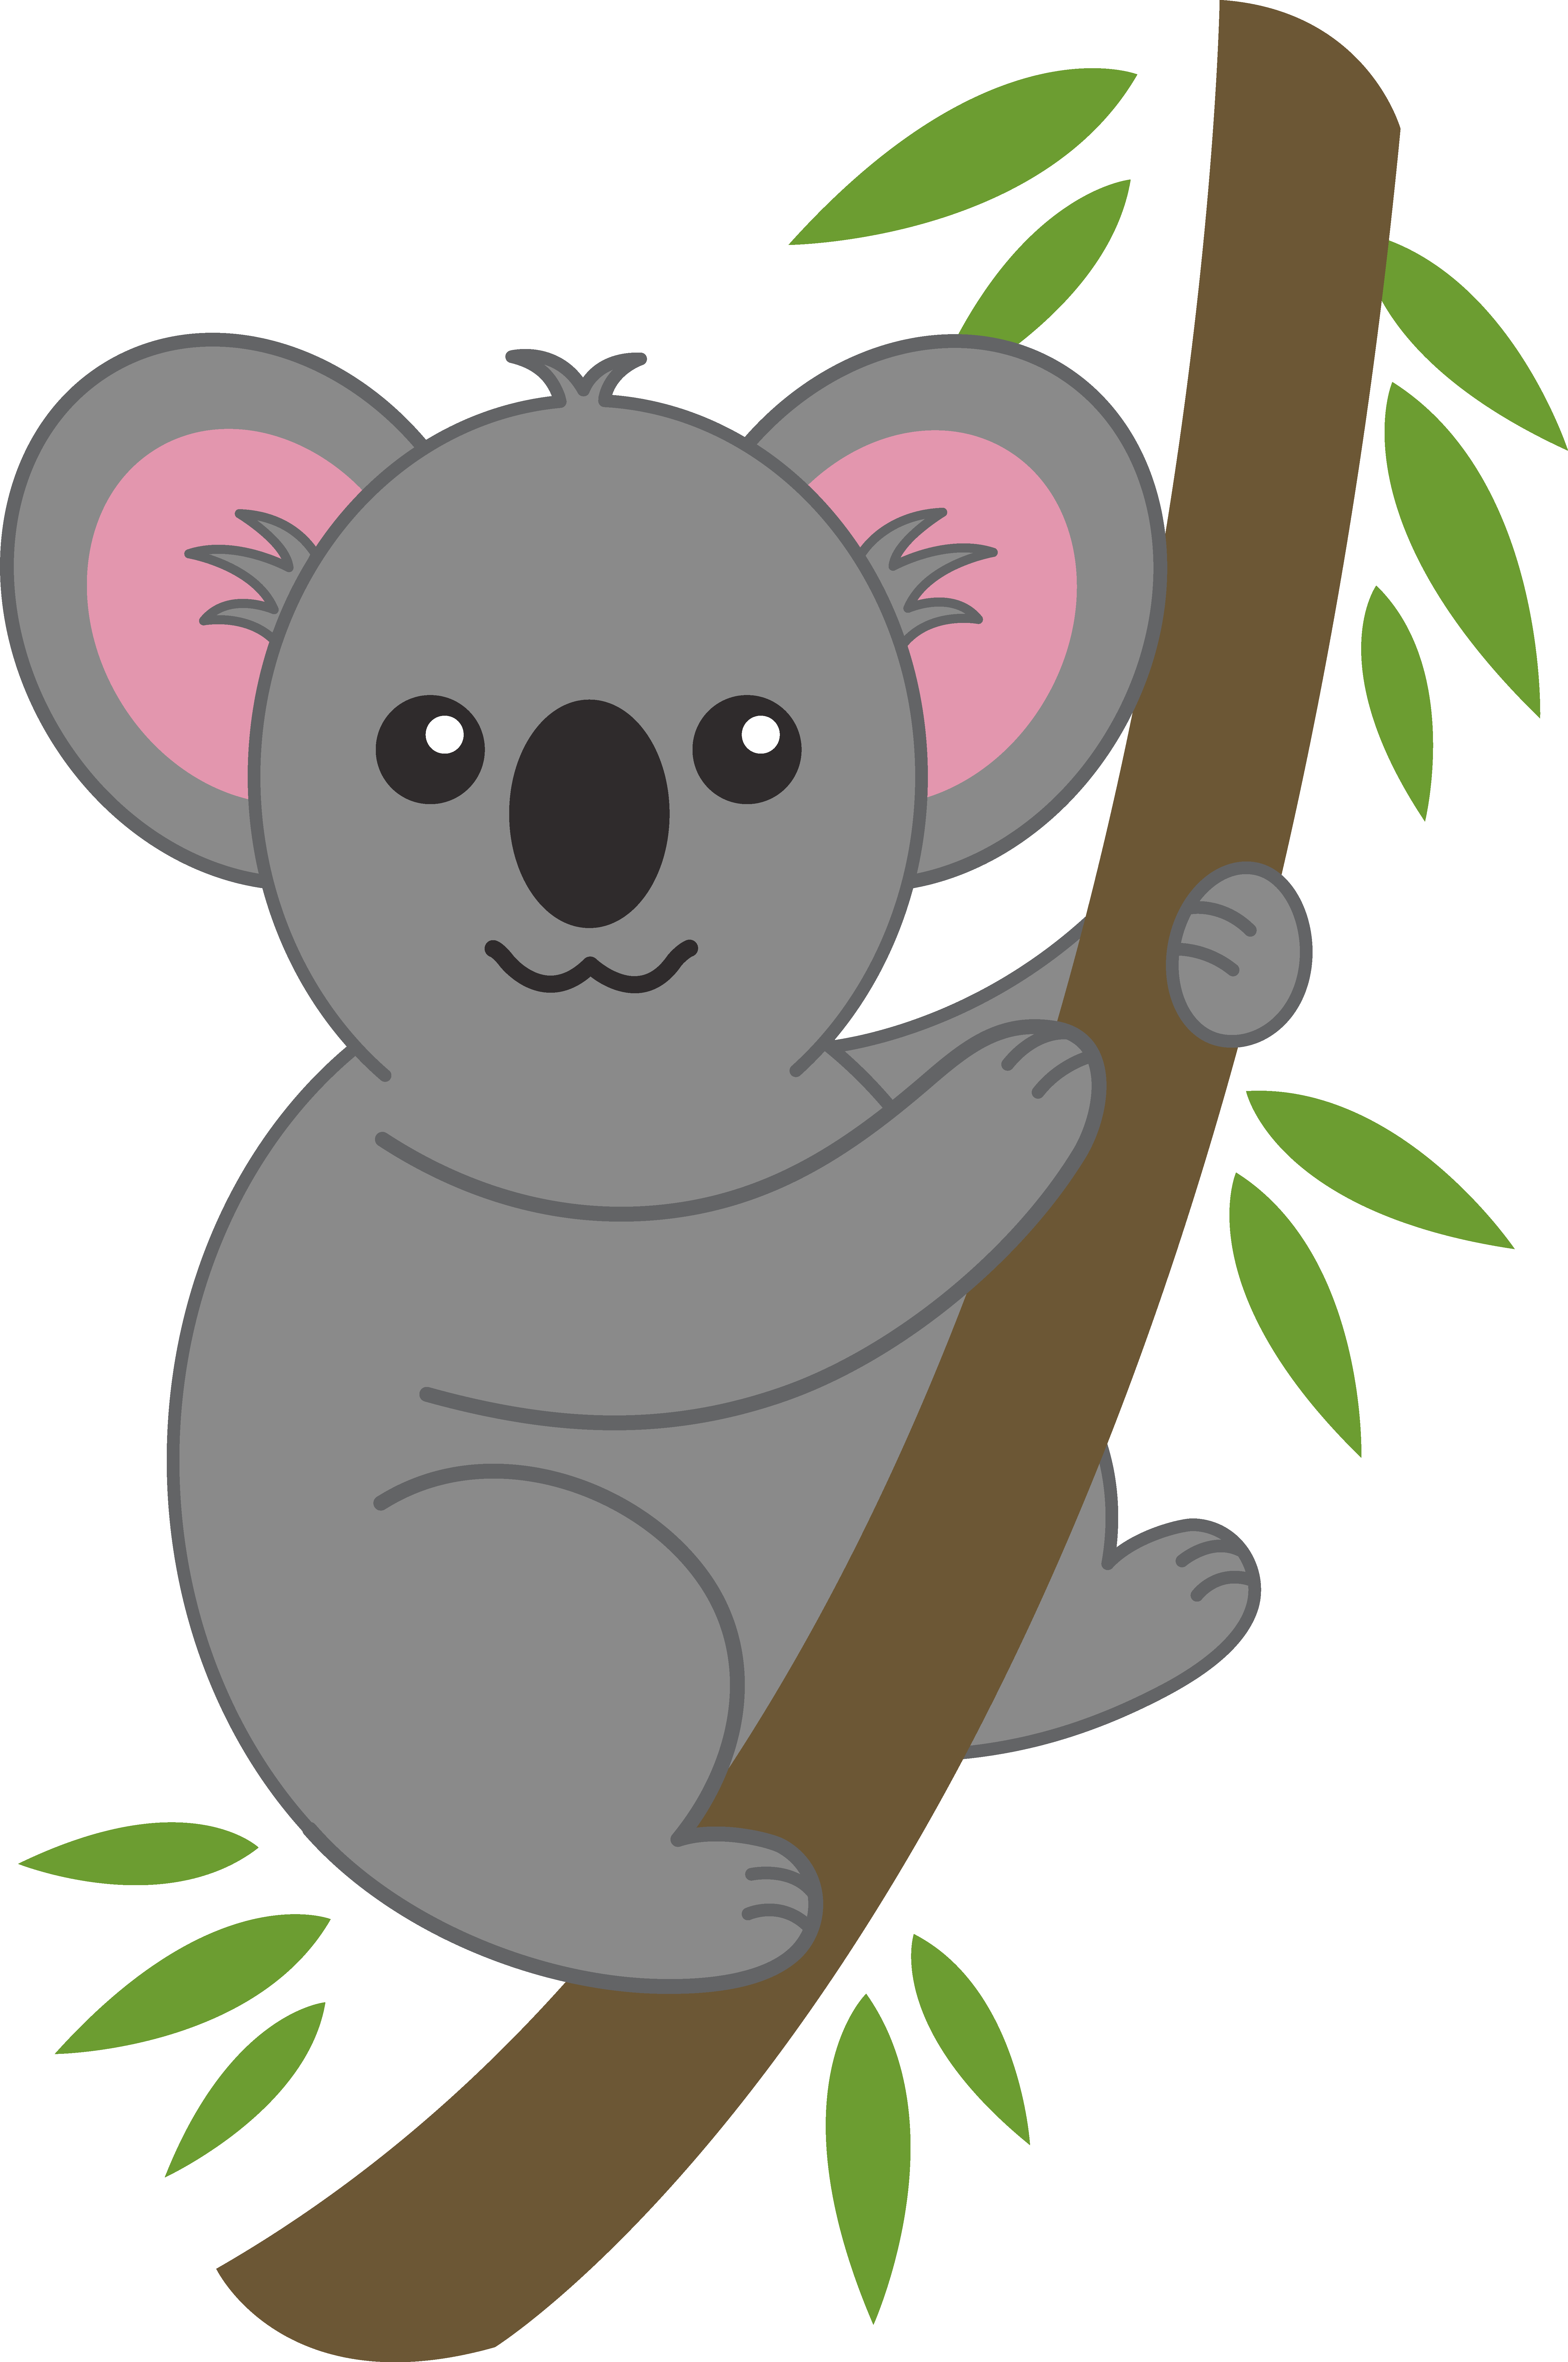 Cute Koala on Tree Branch Free Clip Art